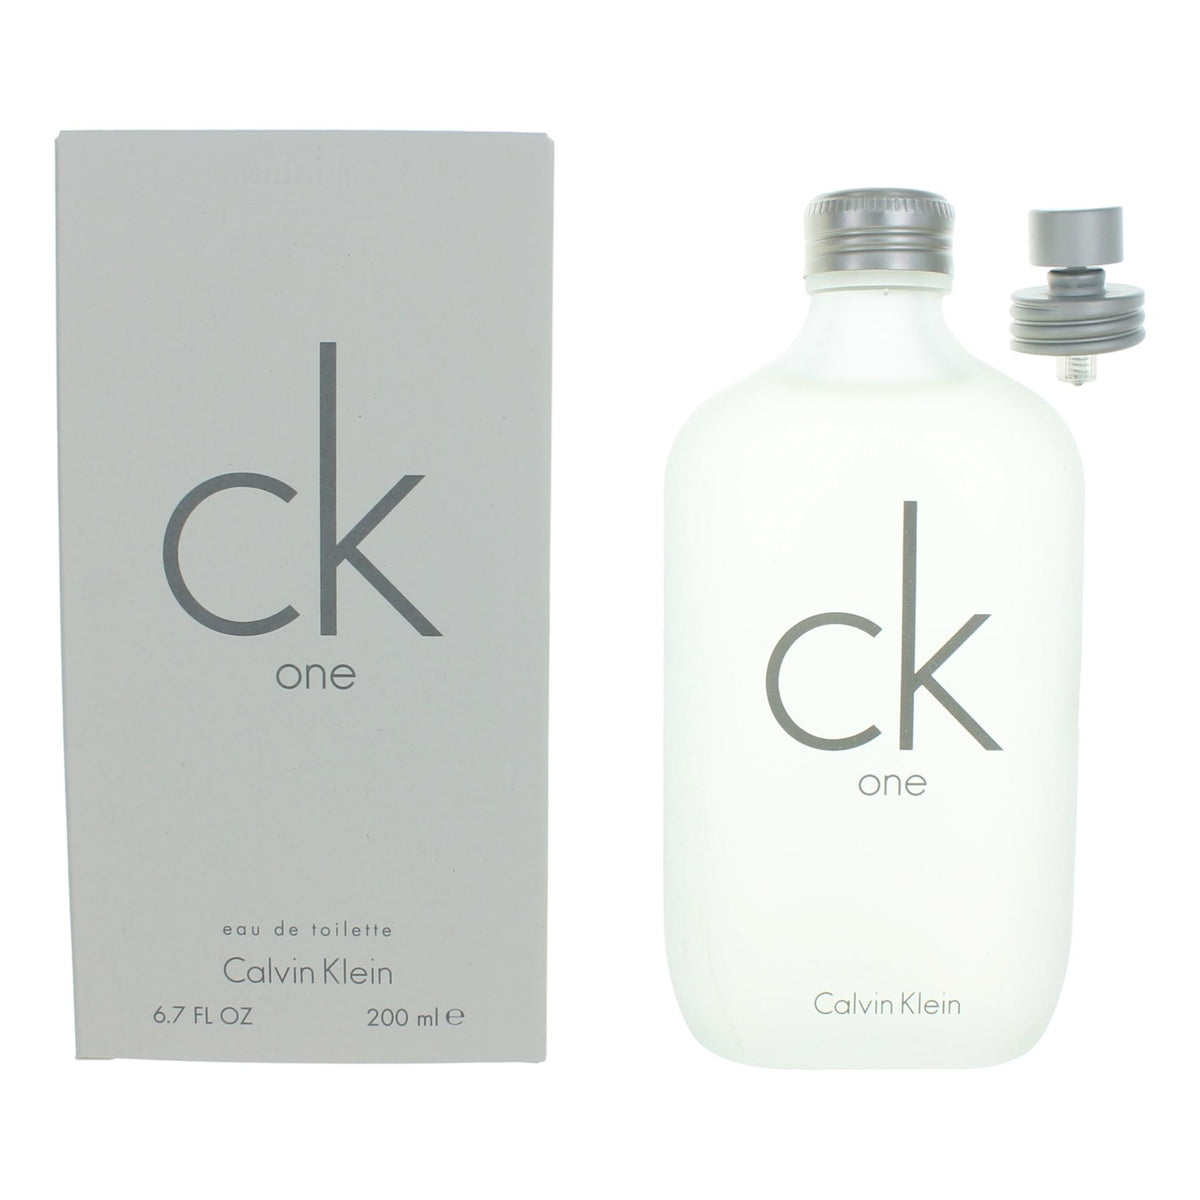 CK One by Calvin Klein, 6.7 oz Eau De Toilette Spray Unisex